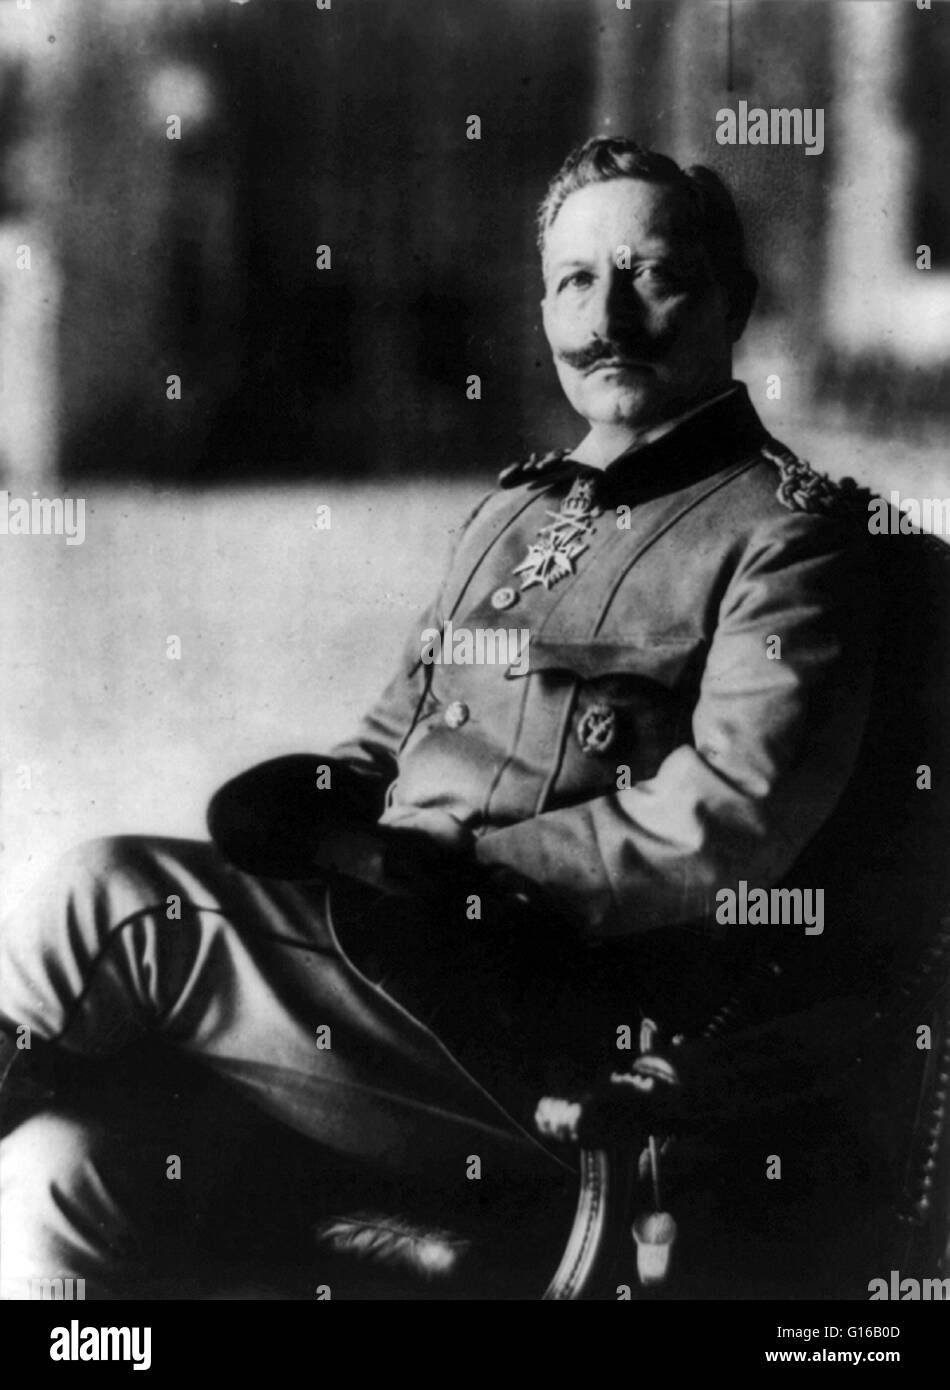 Guillaume II photographié en 1915. Guillaume II (Janvier 27, 1859 - 4 juin 1941) fut le dernier empereur allemand et roi de Prusse, jugeant l'Empire allemand et du royaume de Prusse de 1888 à 1918. Couronné en 1888, il a rejeté le Chancelier, Otto von Bis Banque D'Images